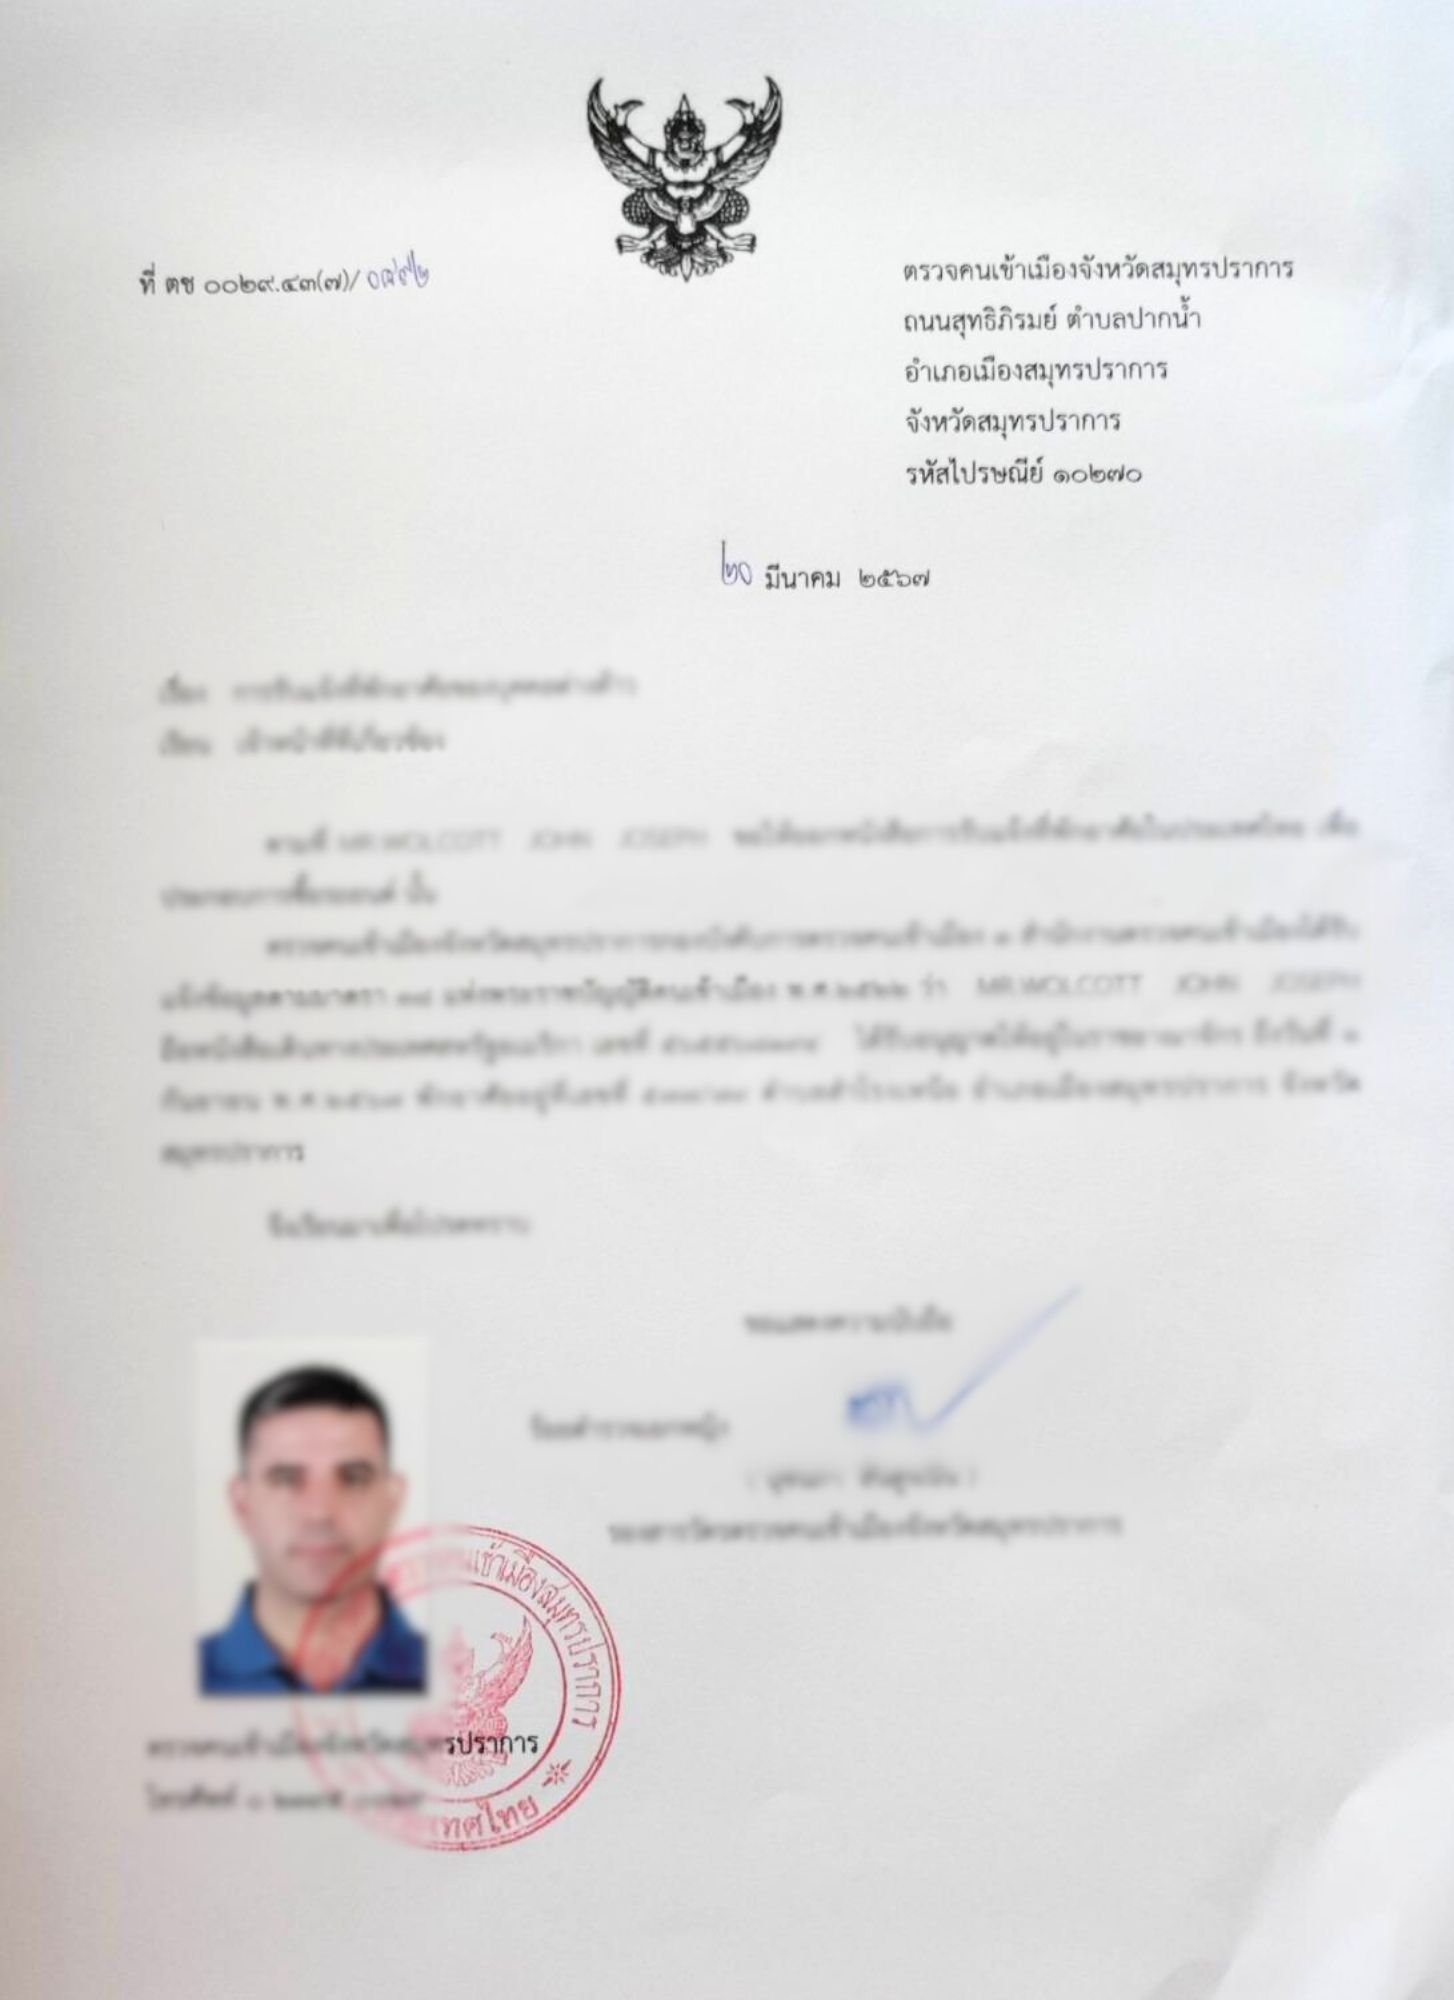 Thai Residence Certificate